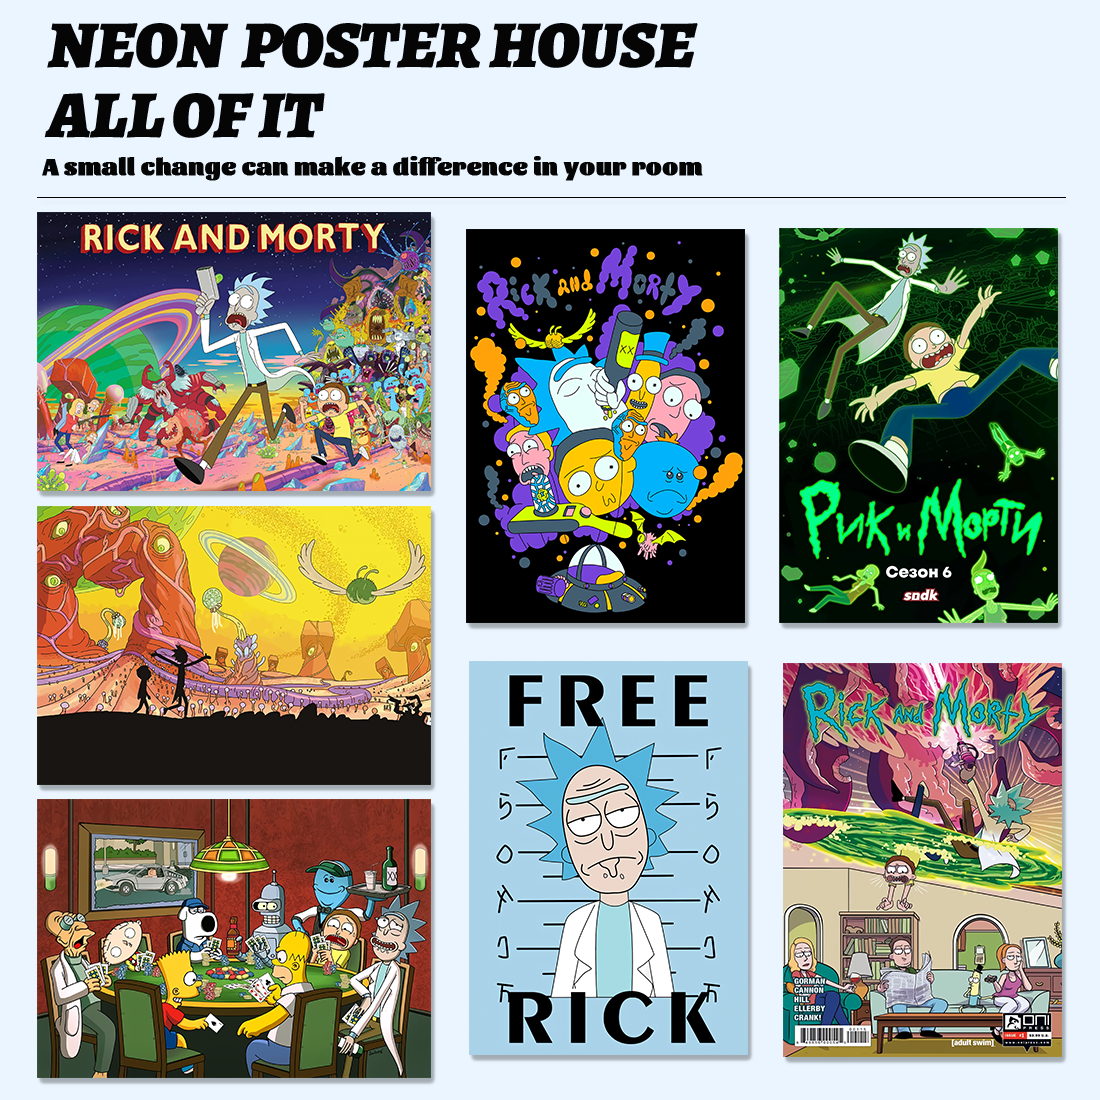 Rick and Morty海报|瑞克和莫蒂美式卡通动漫|卧室宿舍装饰壁纸墙